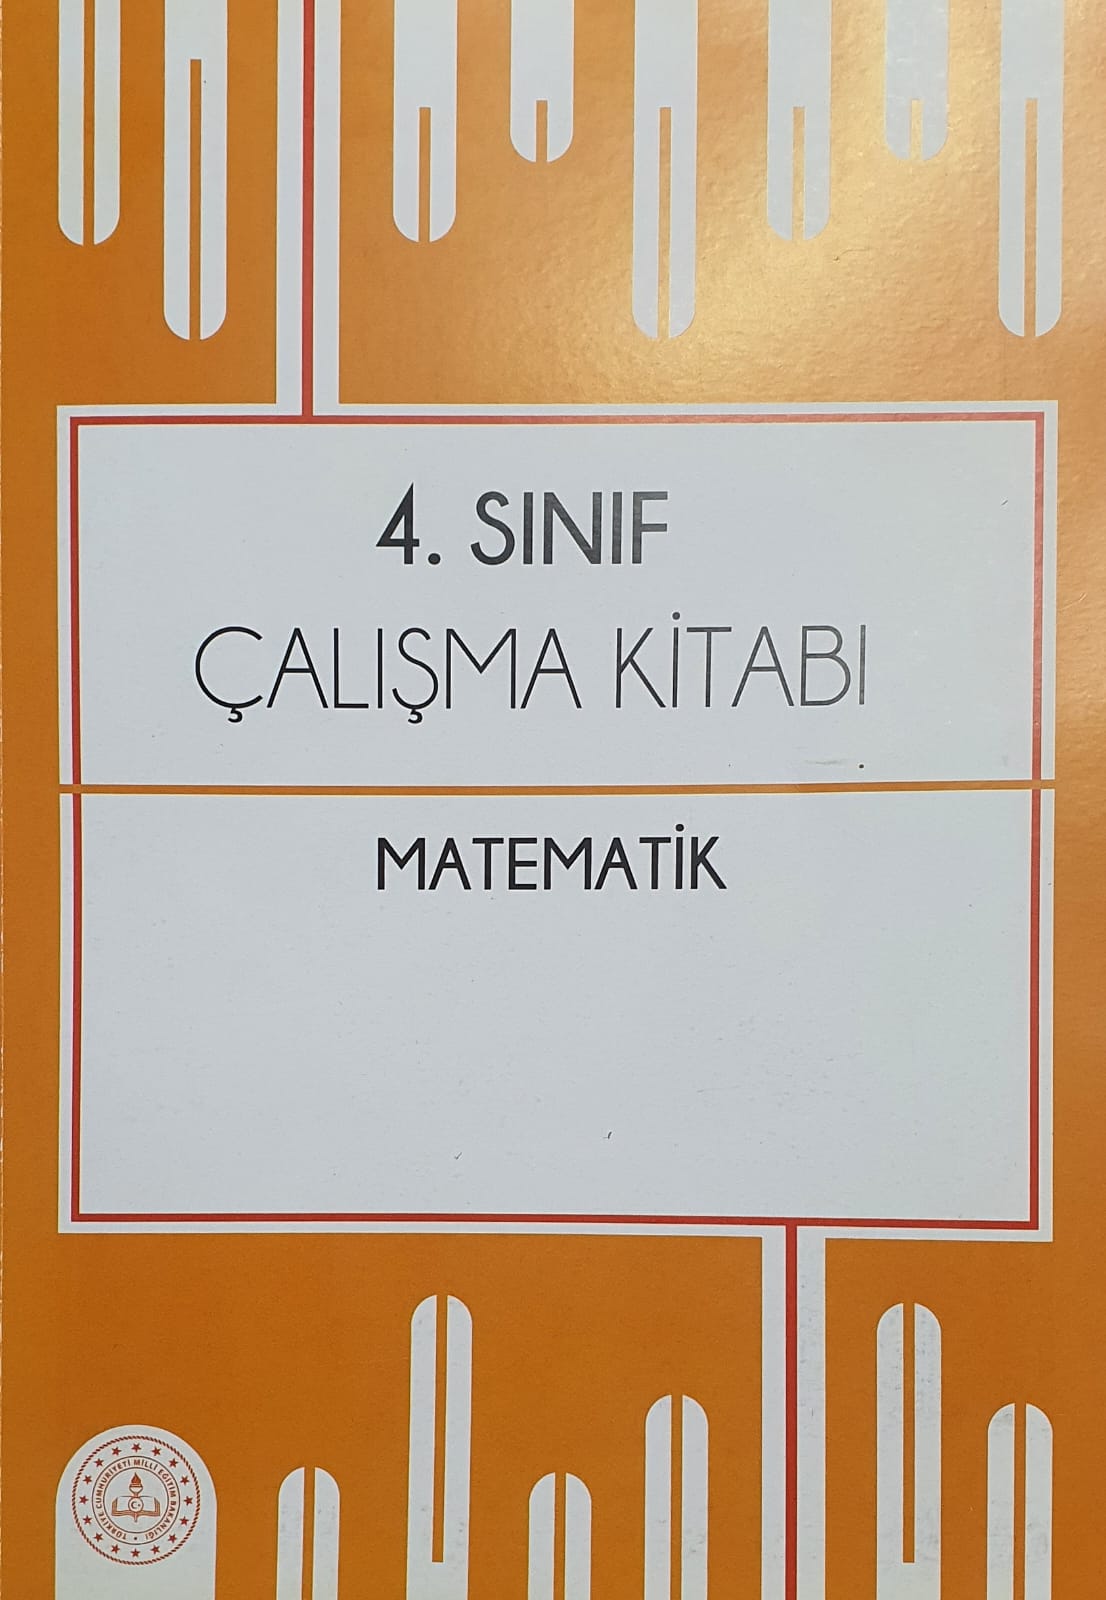 4. Sınıf Matematik Yardımcı Kaynak Çalışma Kitabı pdf indir